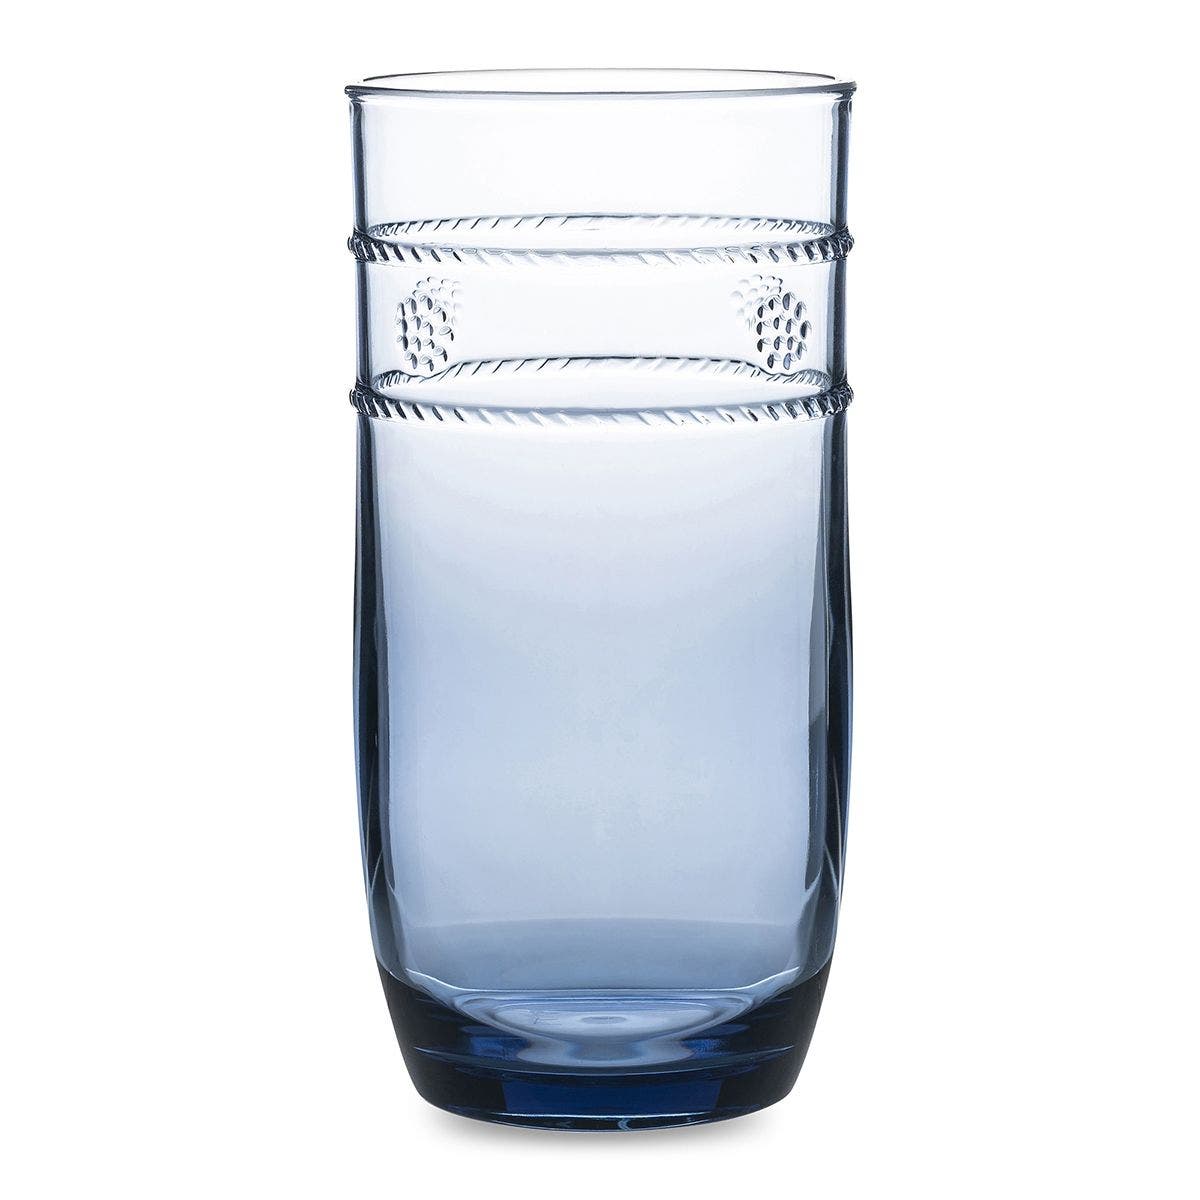 GLASS LARGE BEVERAGE ACRYLIC BLUE ISABELLA